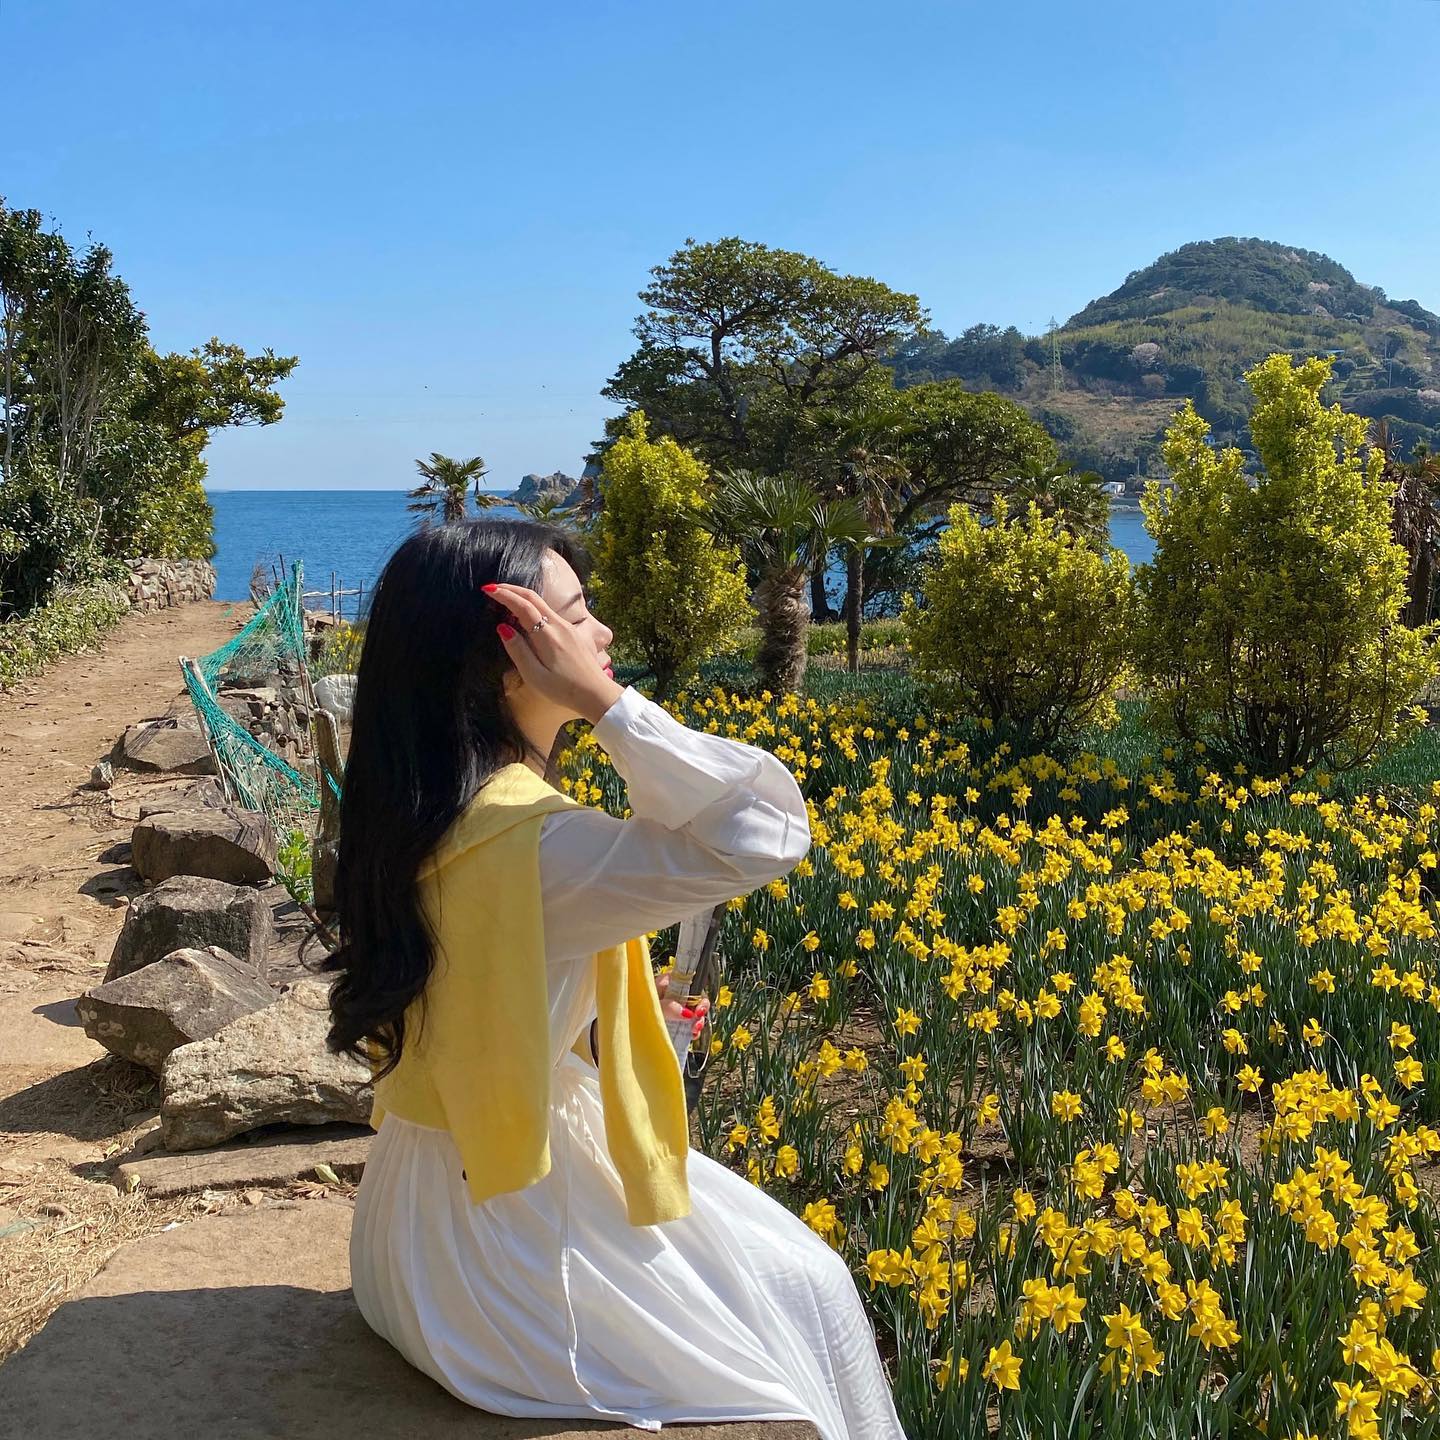 탁 트인 푸른 바다를 배경으로 노란 수선화 꽃밭이 가득 메운 공곶지. 